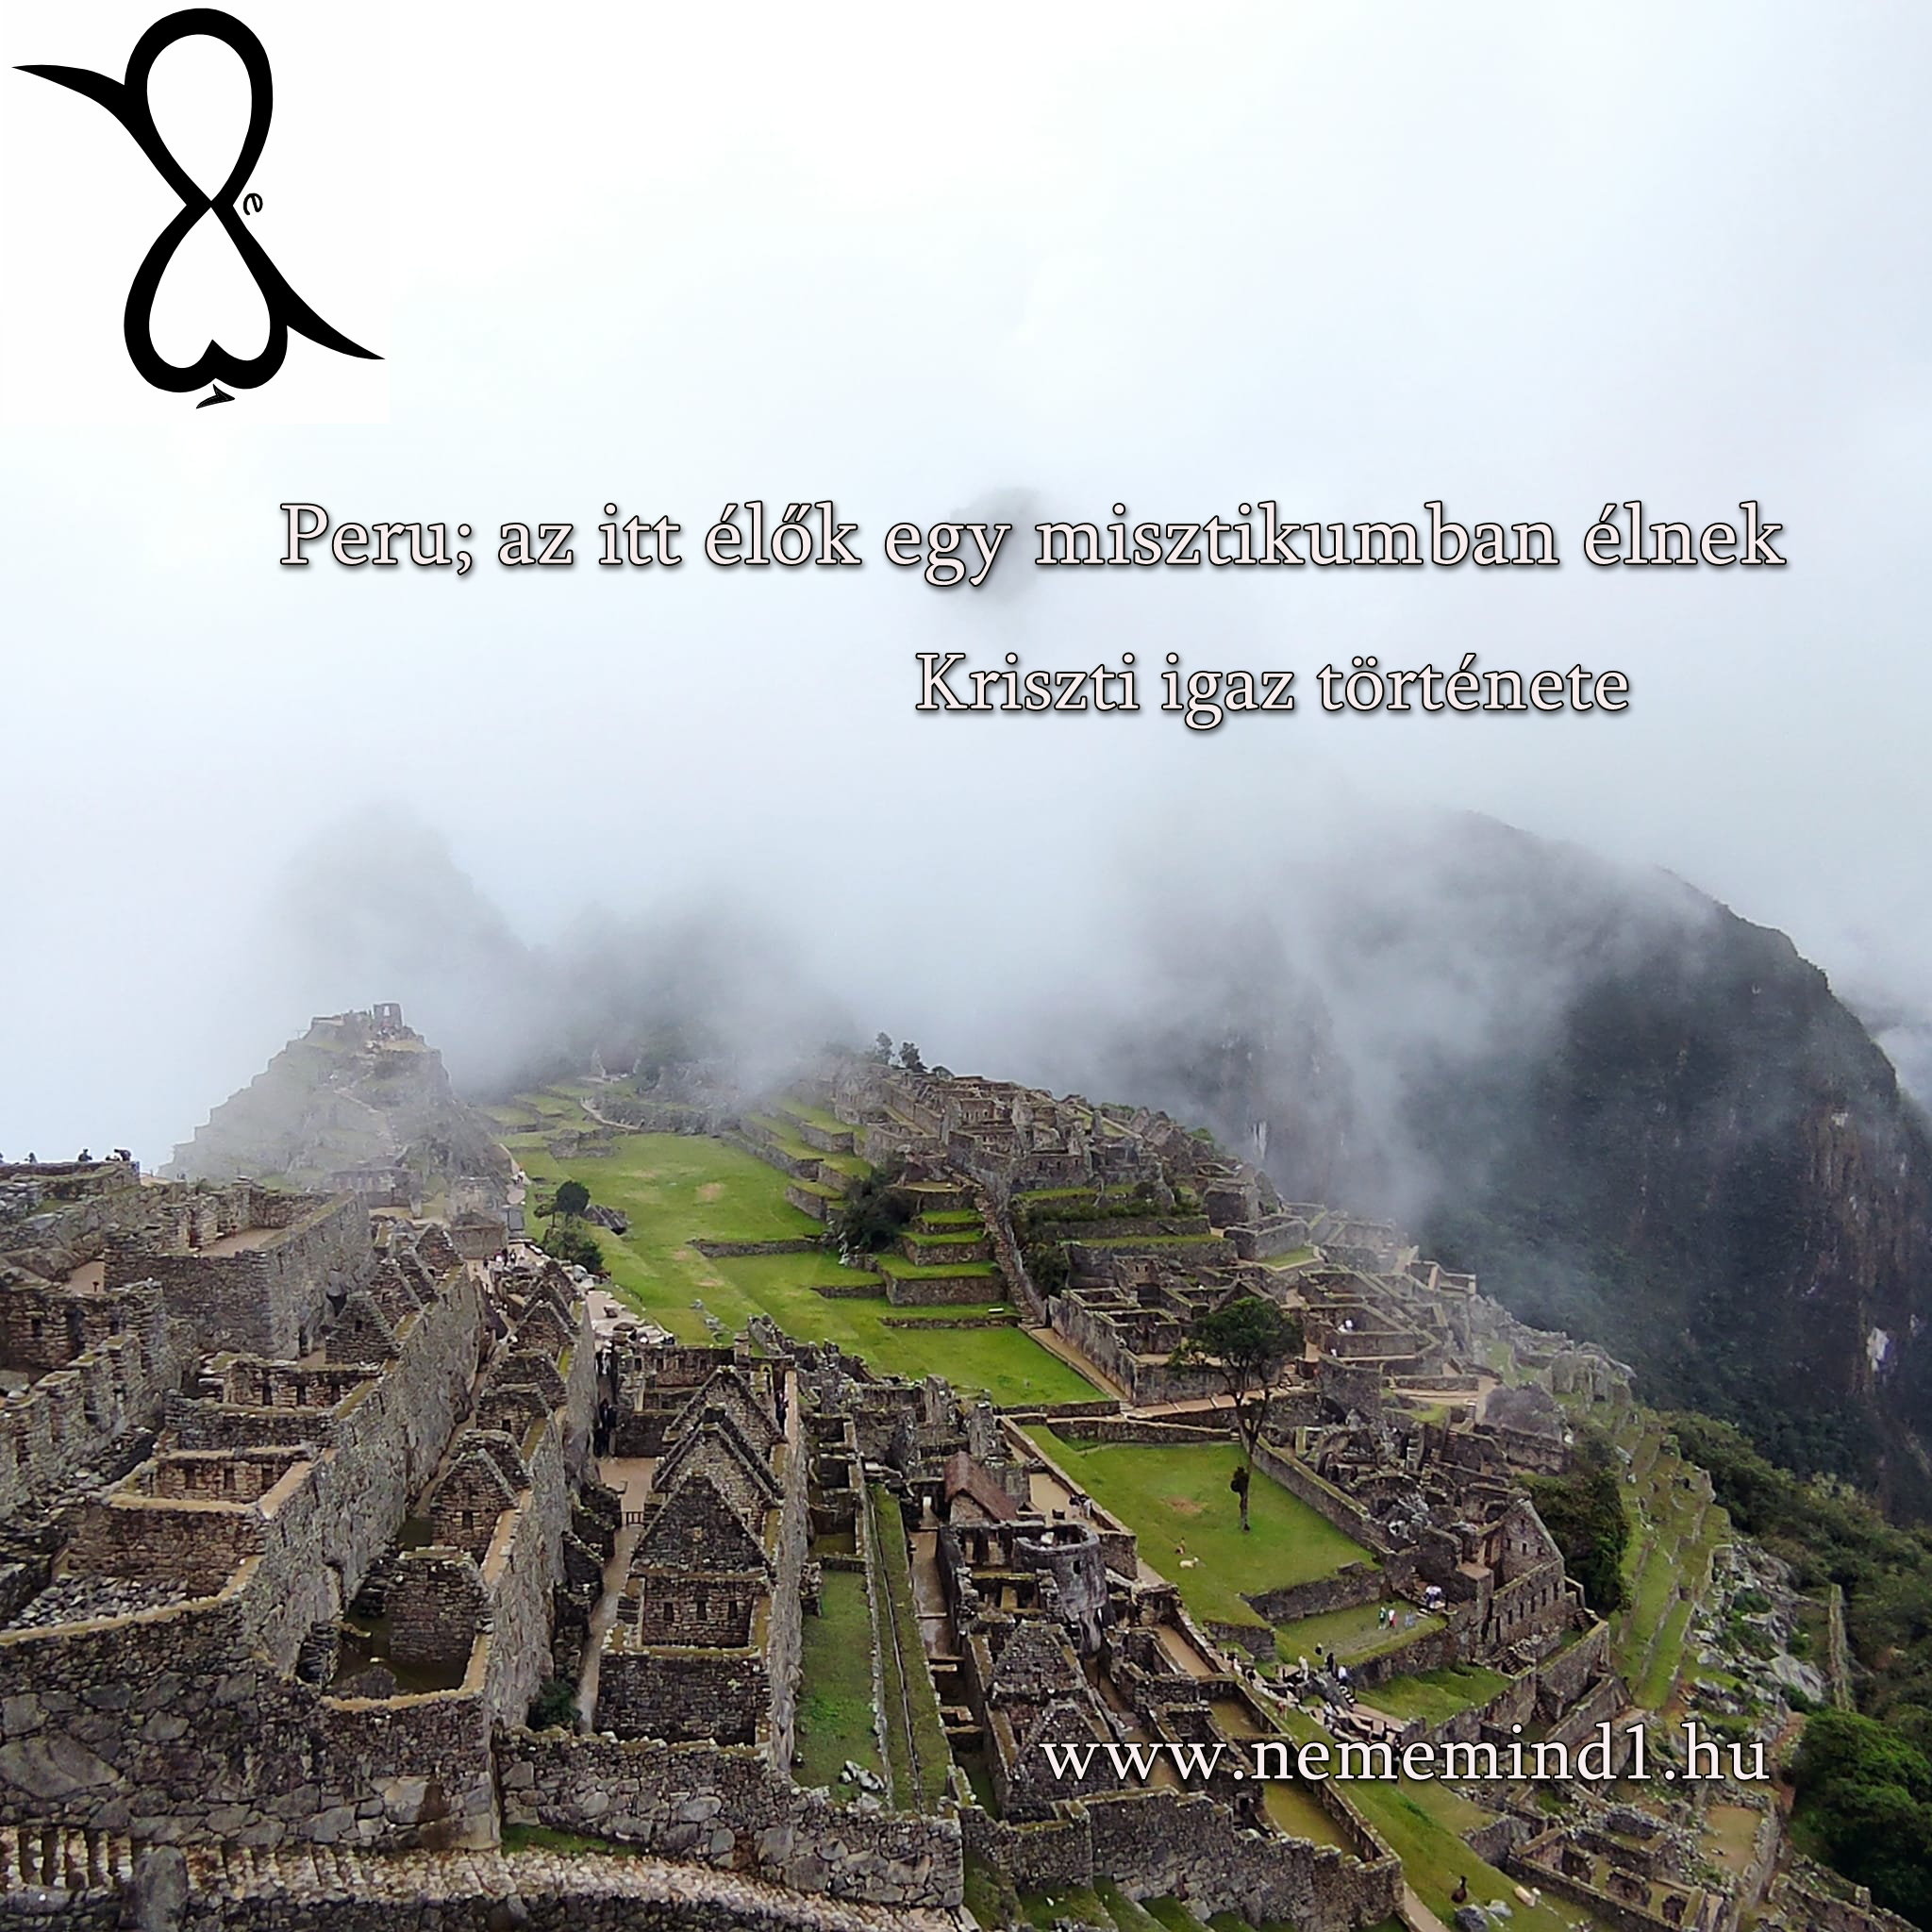 You are currently viewing Peru; az itt élők egy misztikumban élnek (Kriszti igaz története)